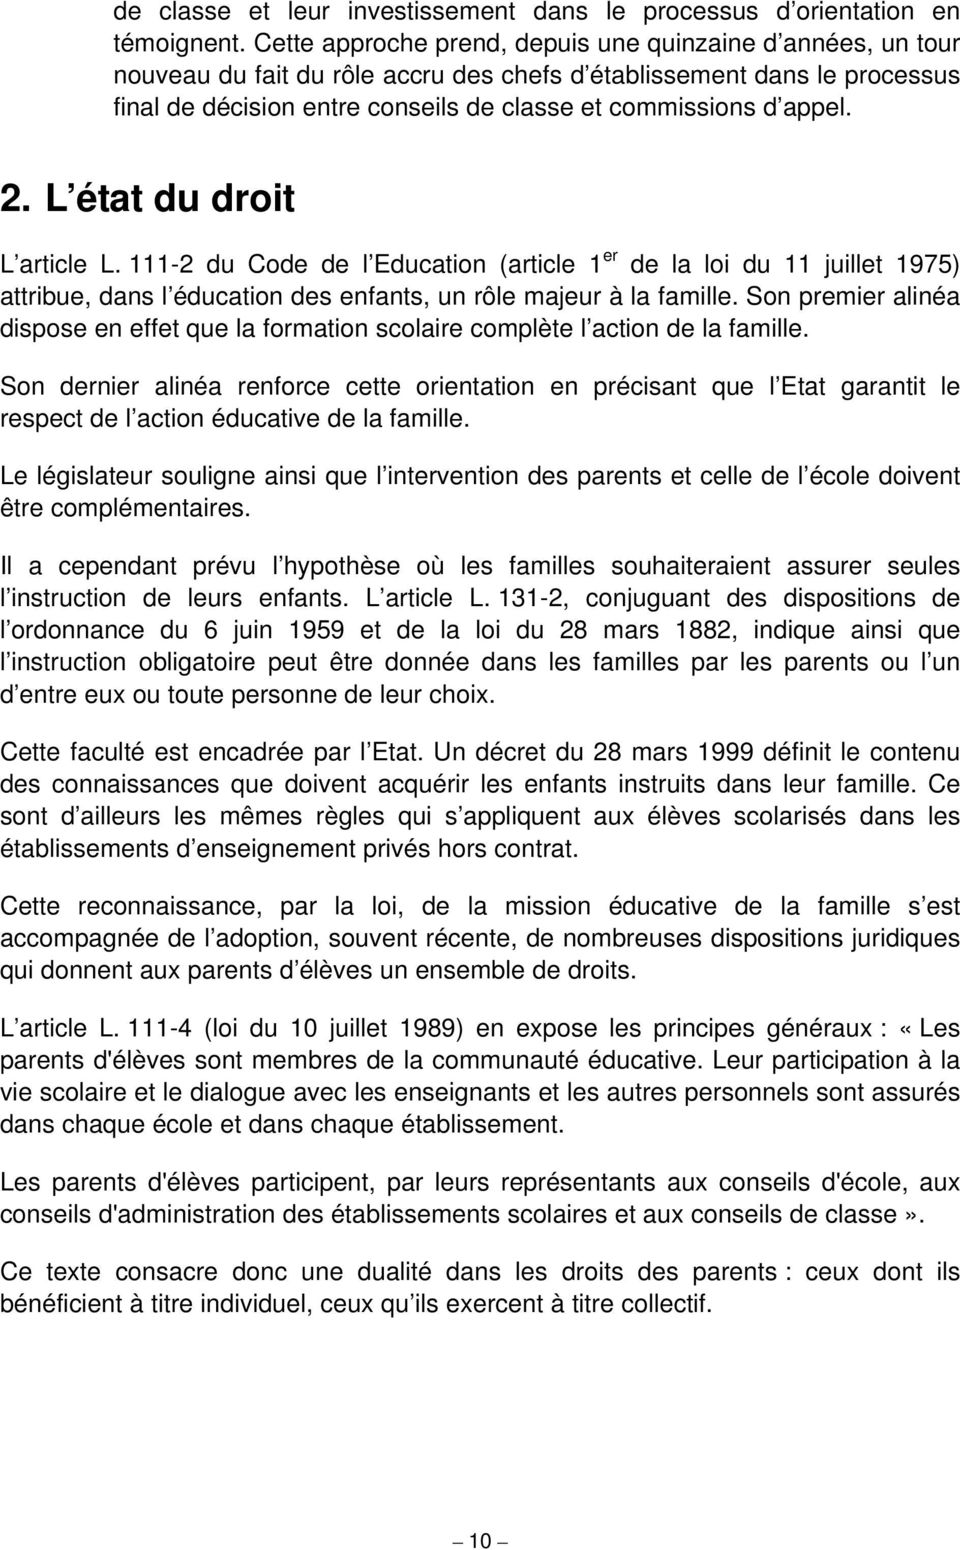 appel. 2. L état du droit L article L. 111-2 du Code de l Education (article 1 er de la loi du 11 juillet 1975) attribue, dans l éducation des enfants, un rôle majeur à la famille.